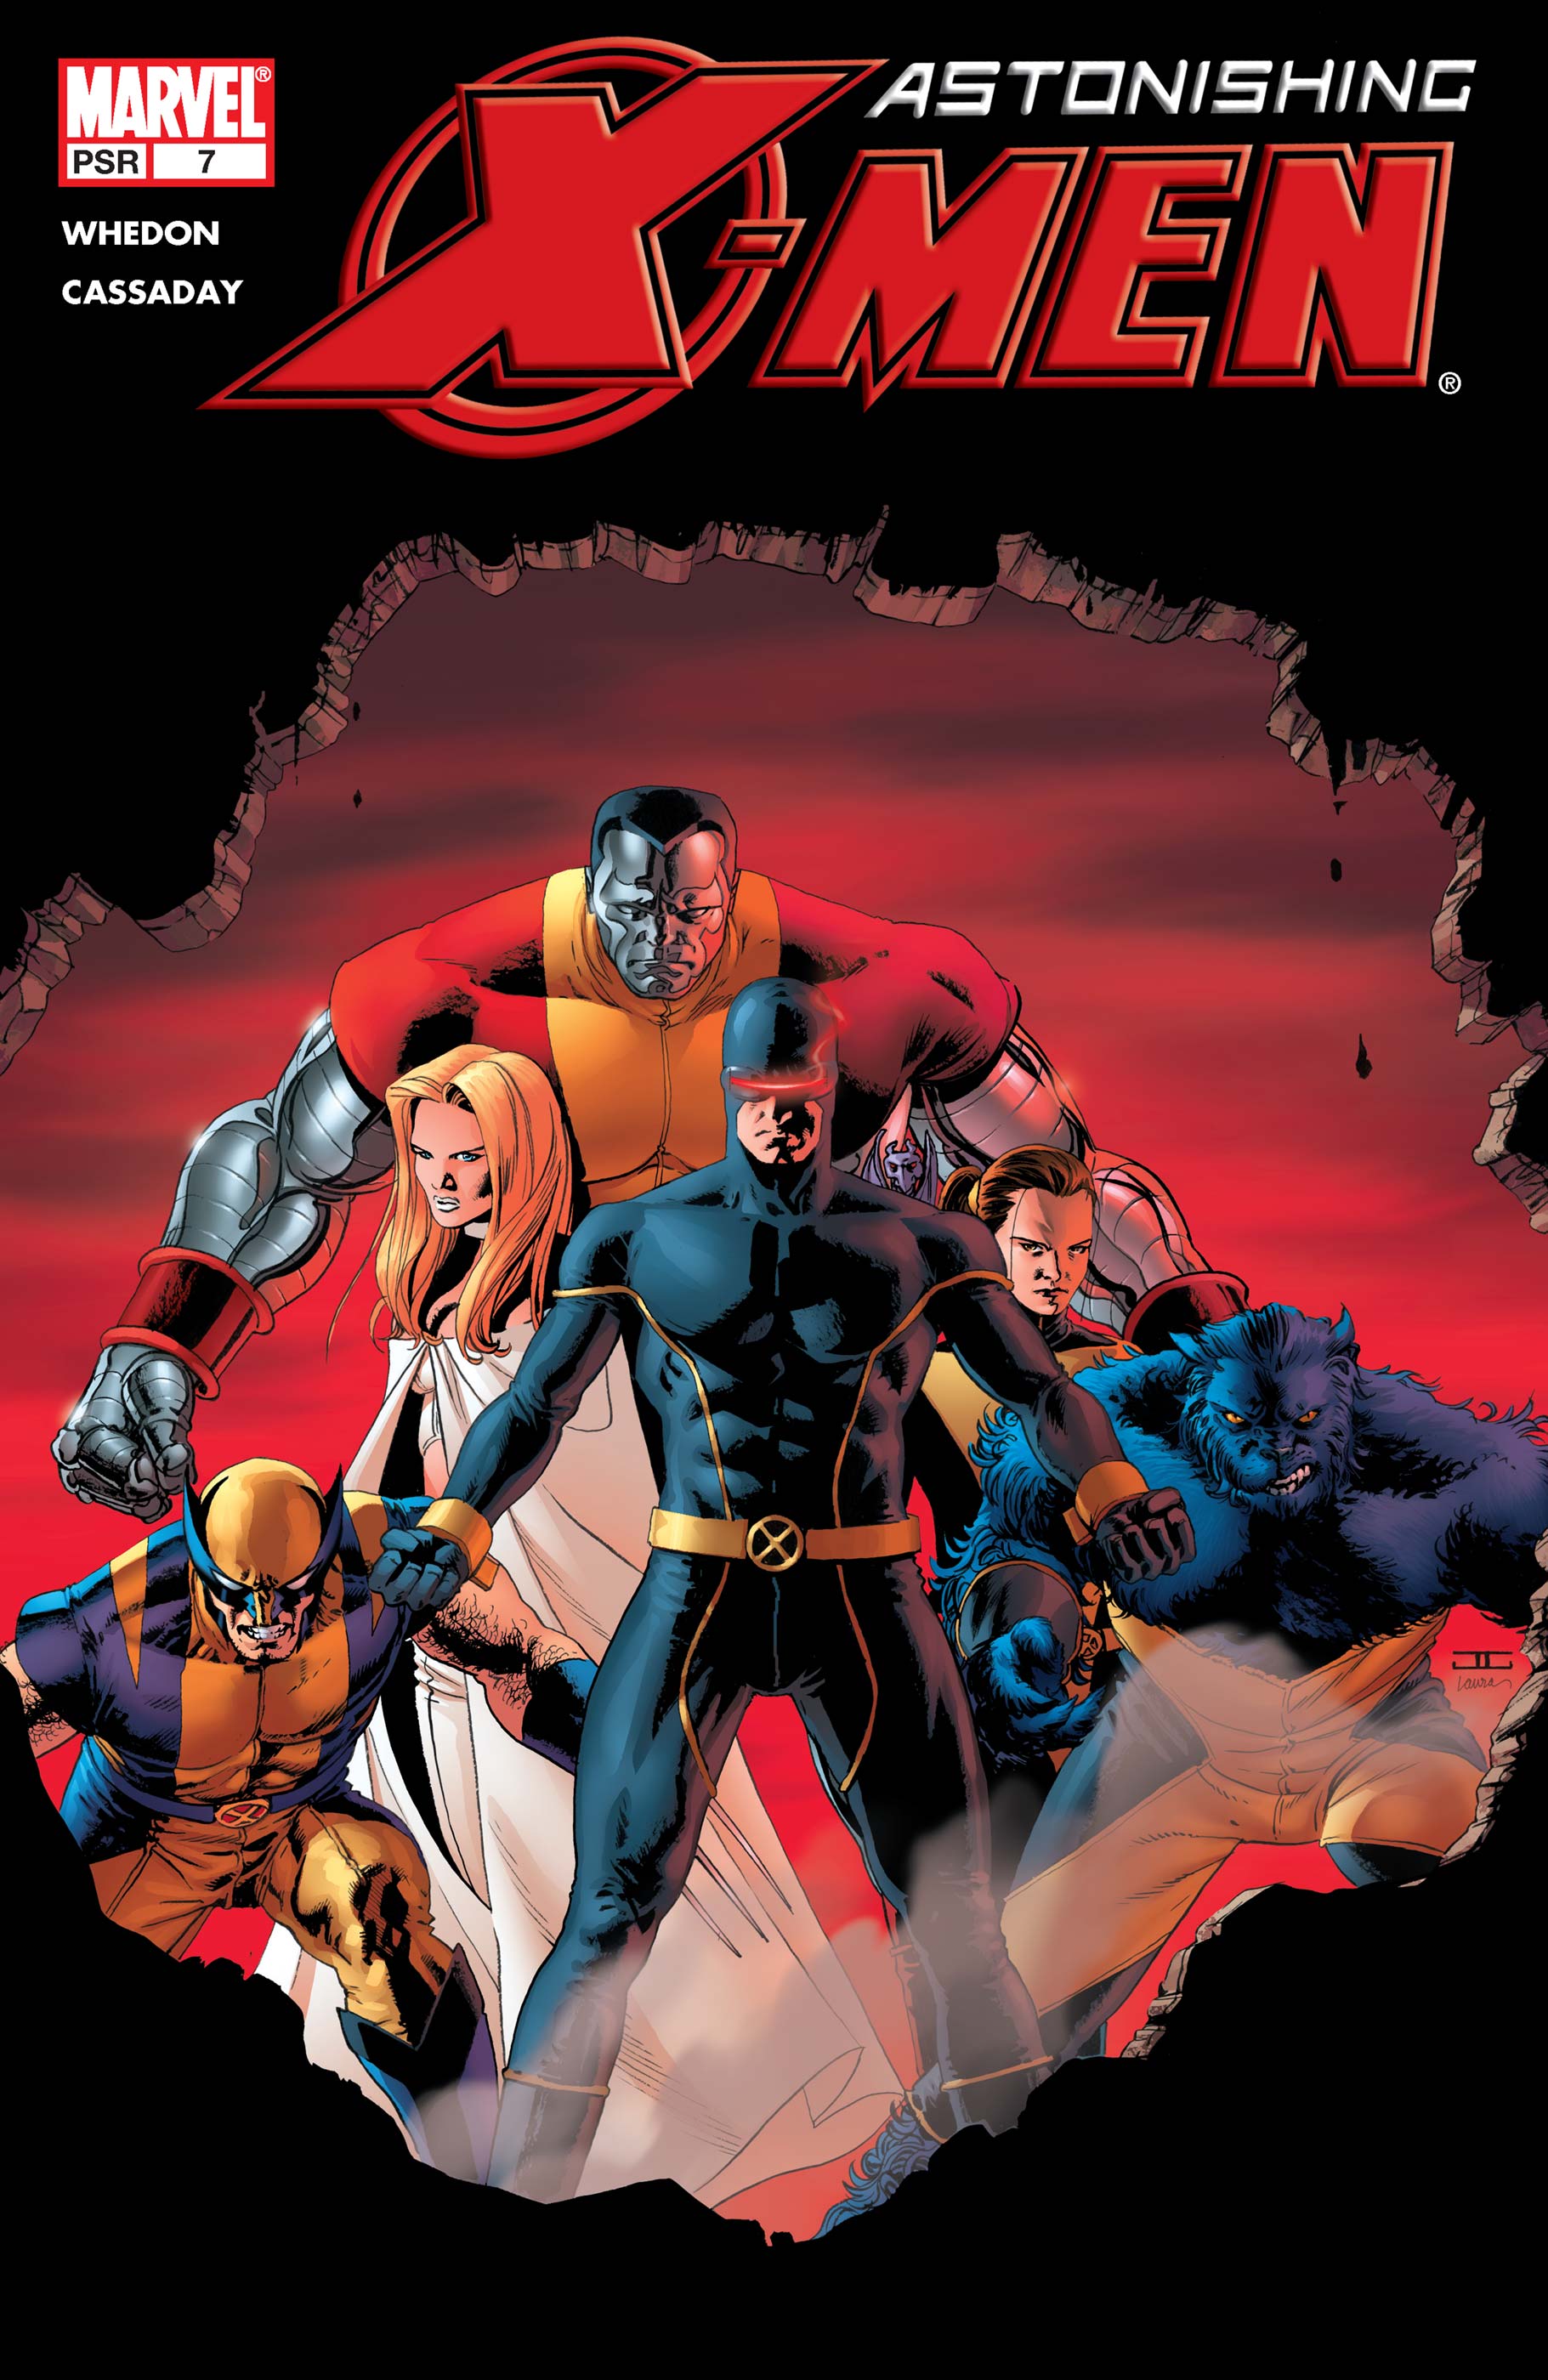 Astonishing X-Men (2004) #7